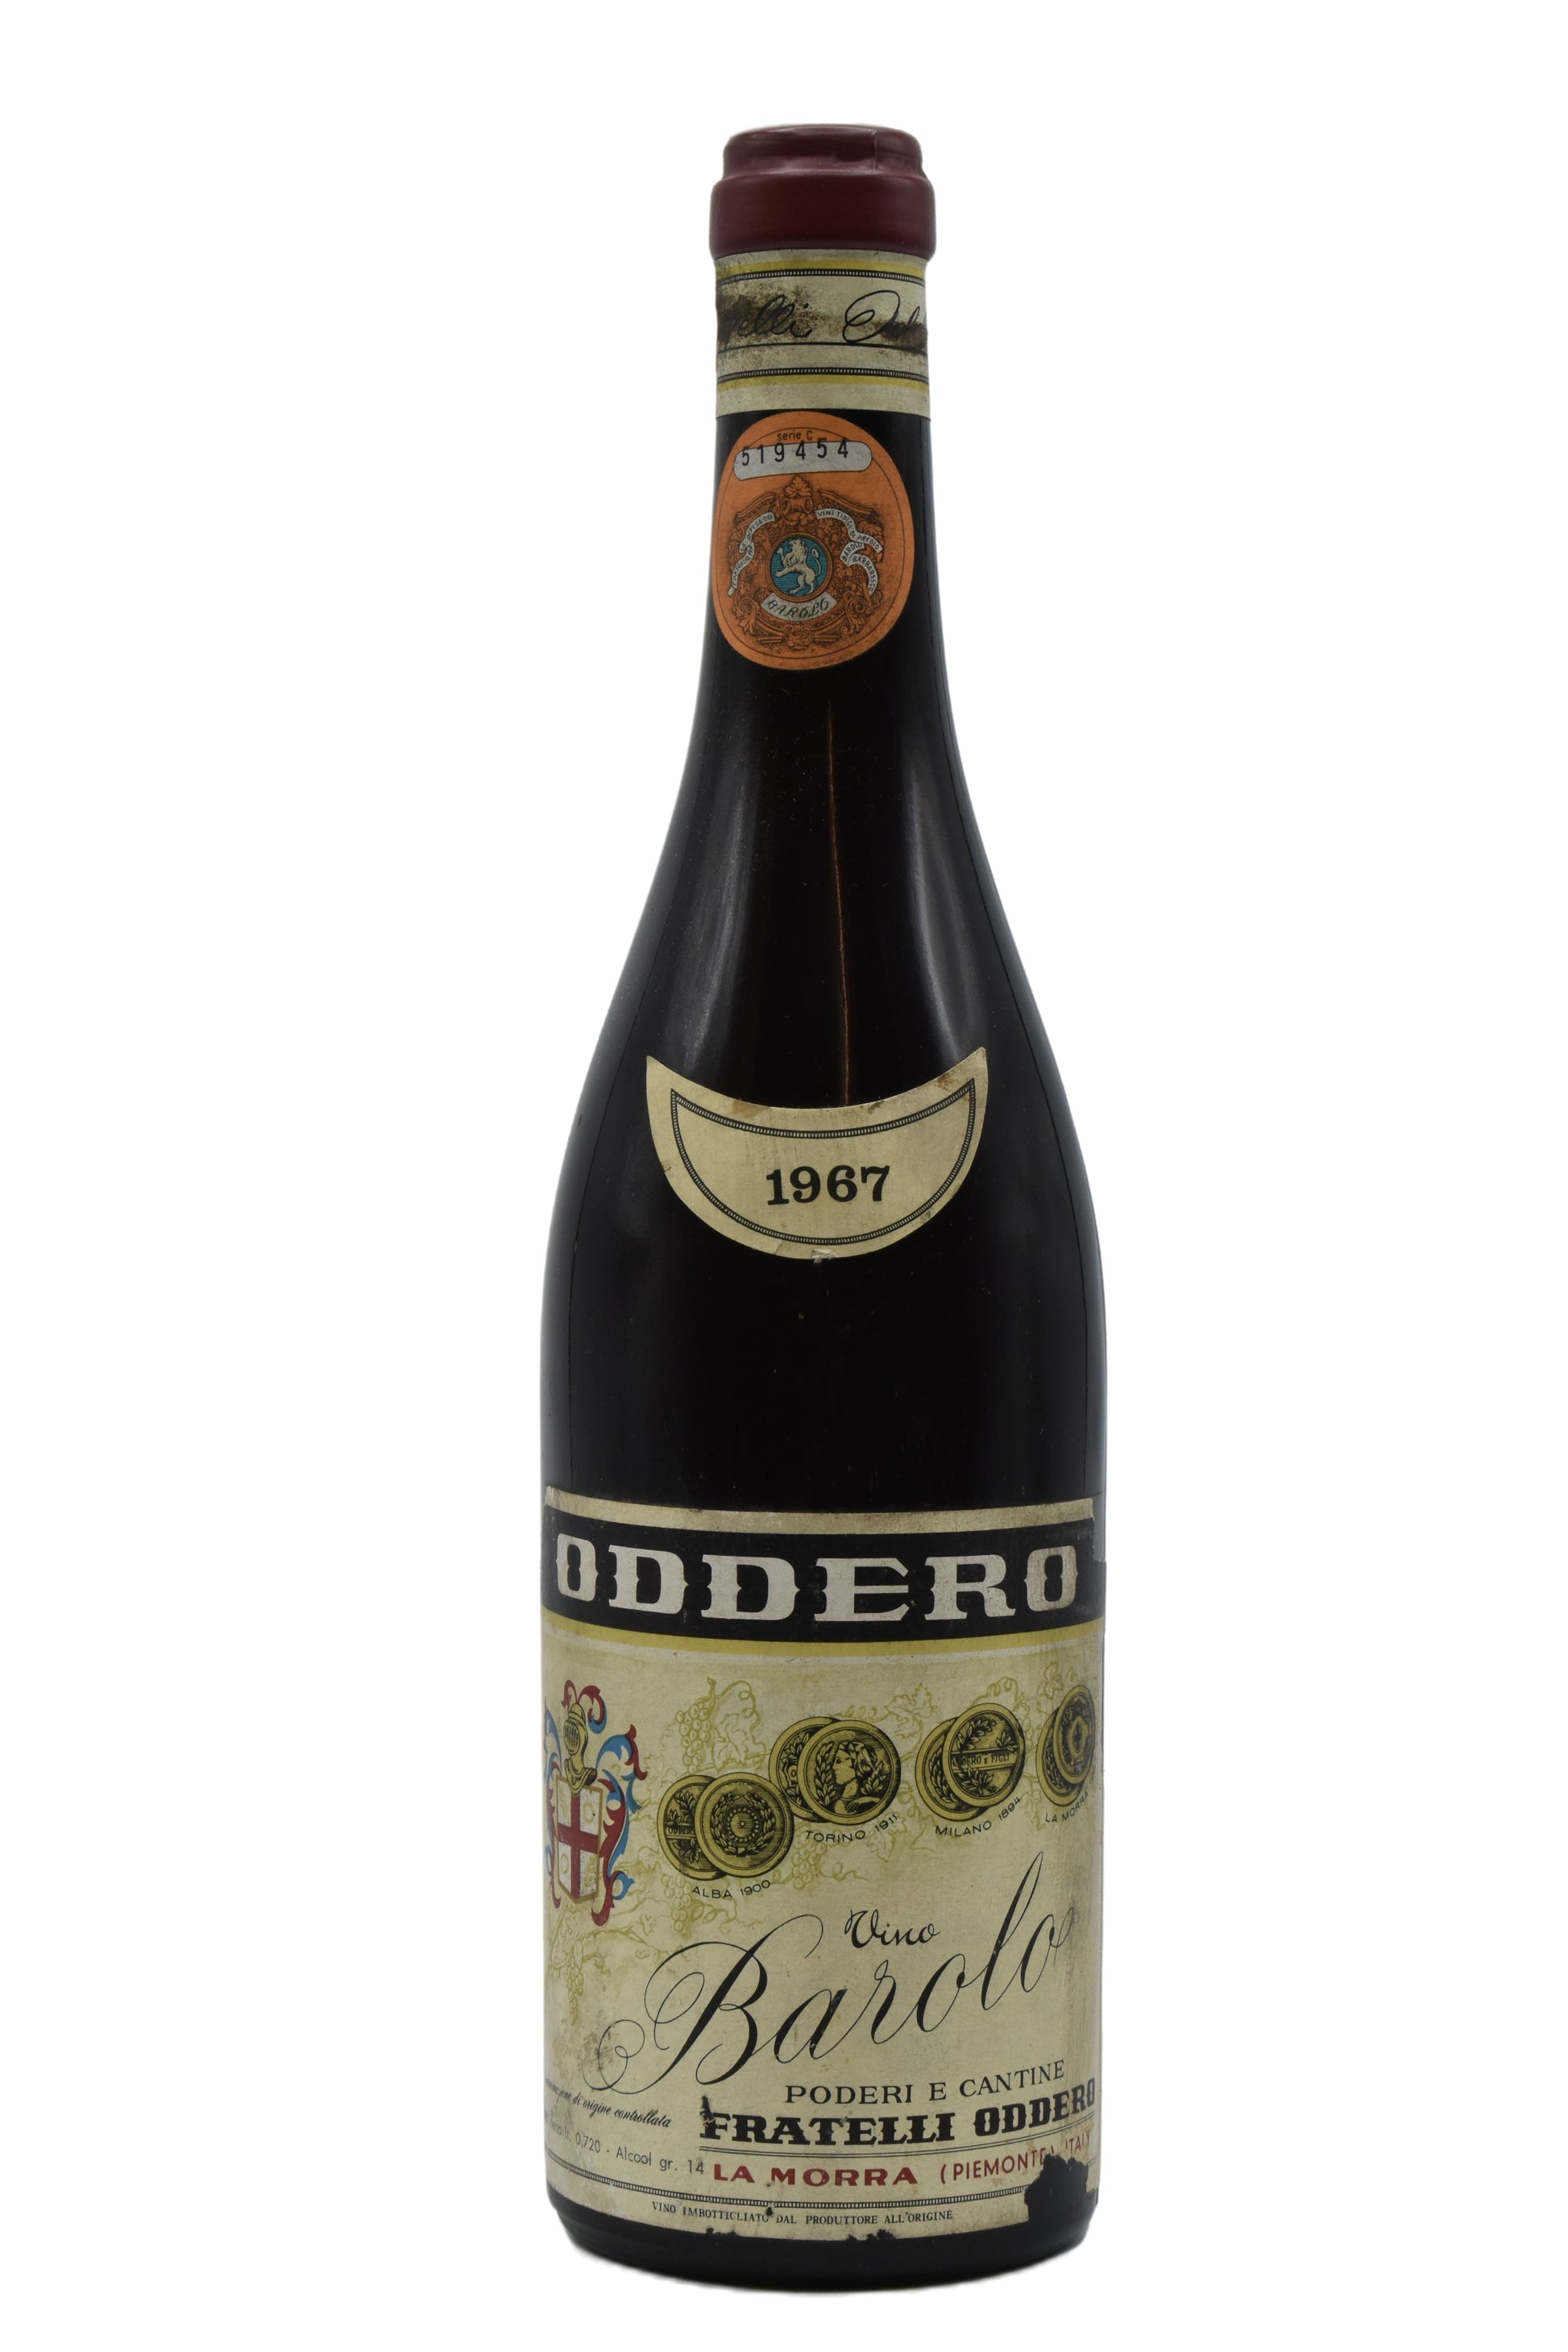 1967 Oddero (F.lli), Barolo 750ml - Walker Wine Co.